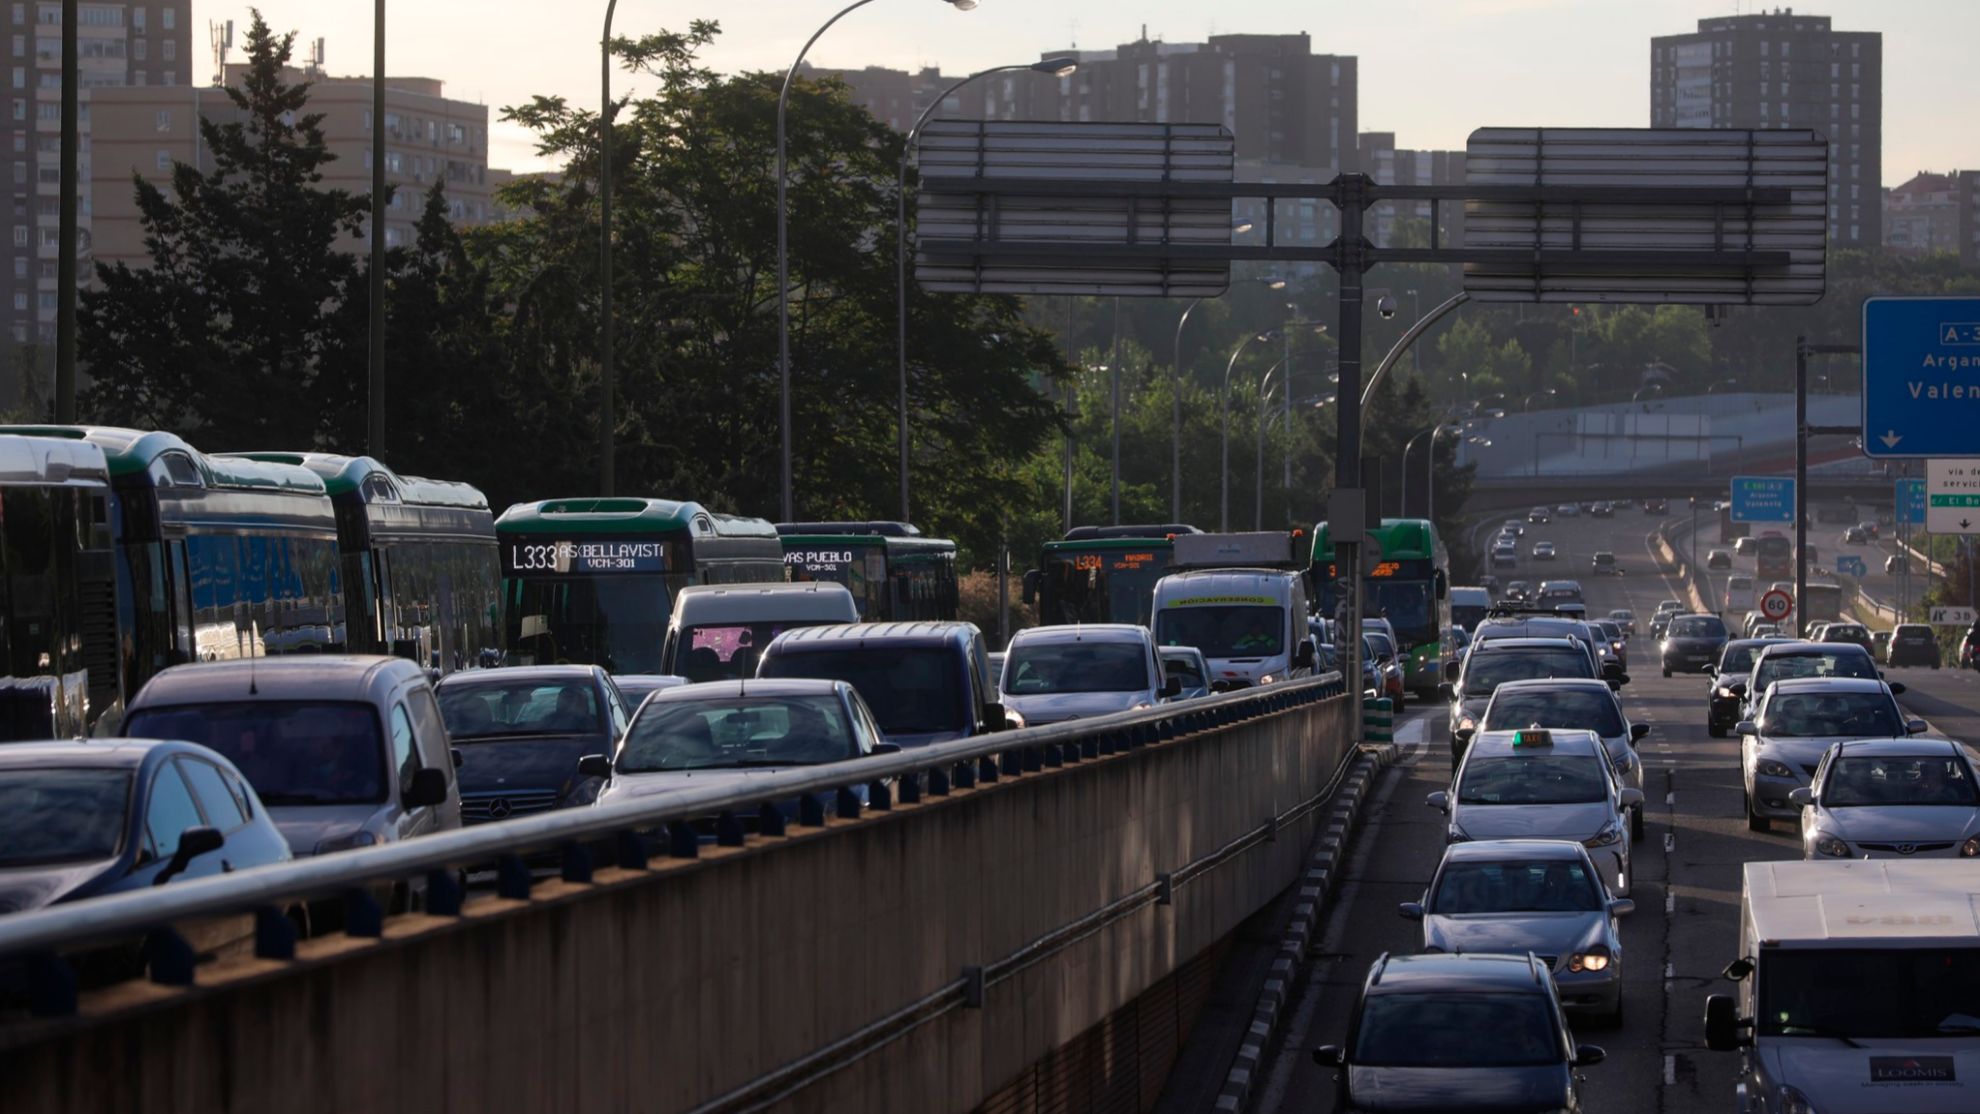 peajes urbanos - ley de movilidad sostenible - tasas - pagar por contaminar - Ministerio de Transportes y movilidad - zonas de bajas emisiones